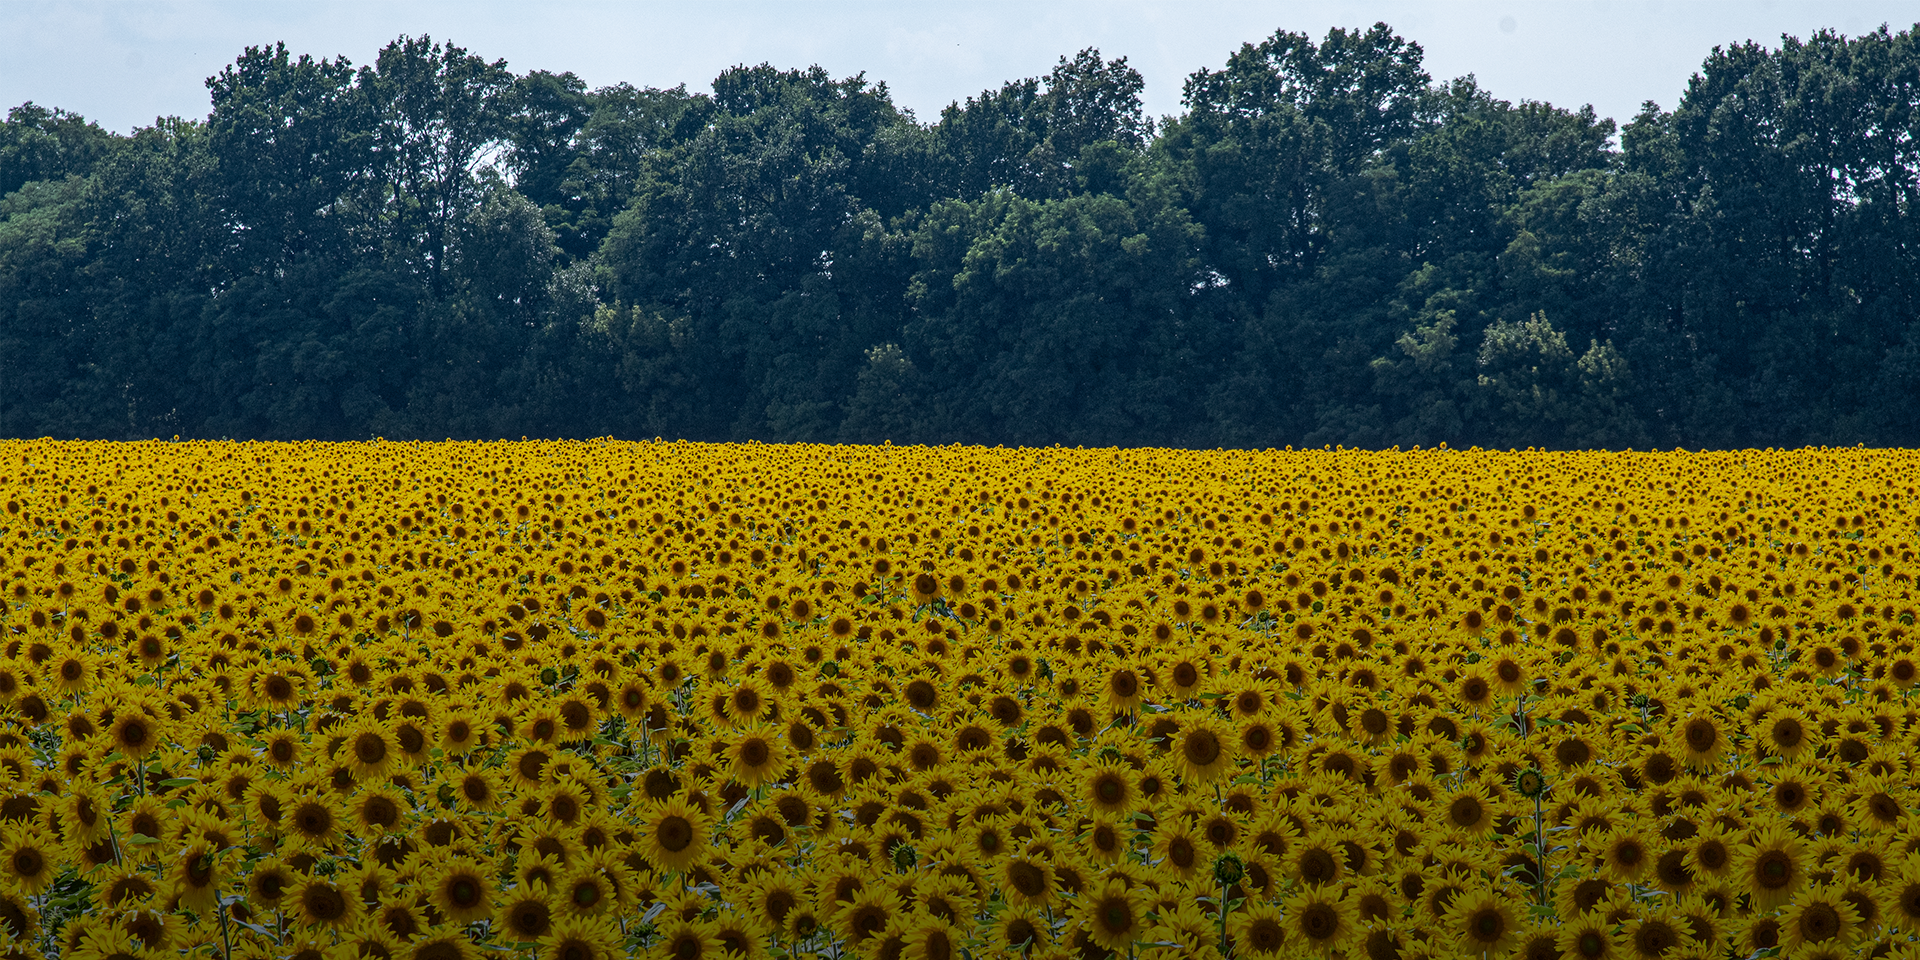 A field of sunflowers in Ukraine